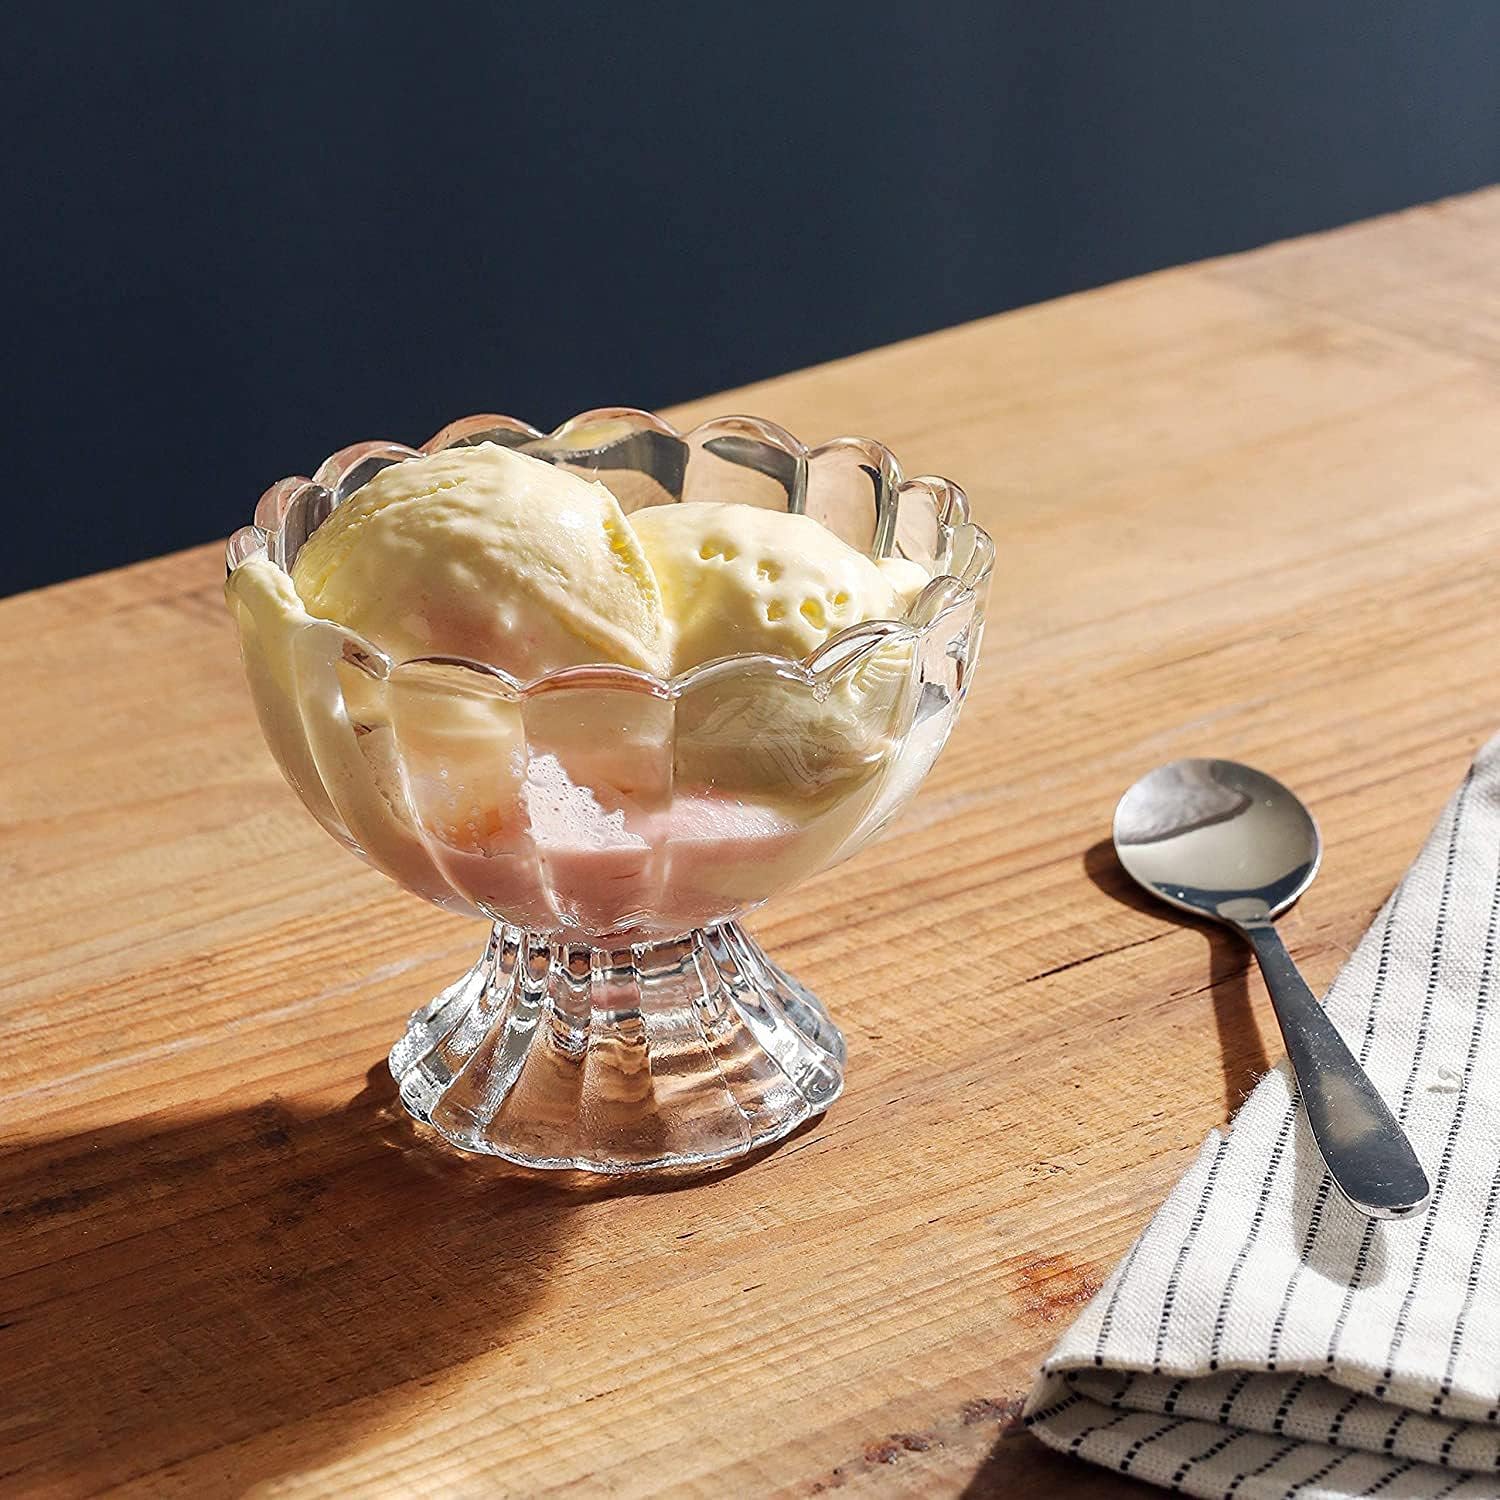 【送料無料】6個入り ガラス製デザートボウル/カップ-小型 透明 デザートカップ デザート サンデー アイスクリーム フルーツサラダ